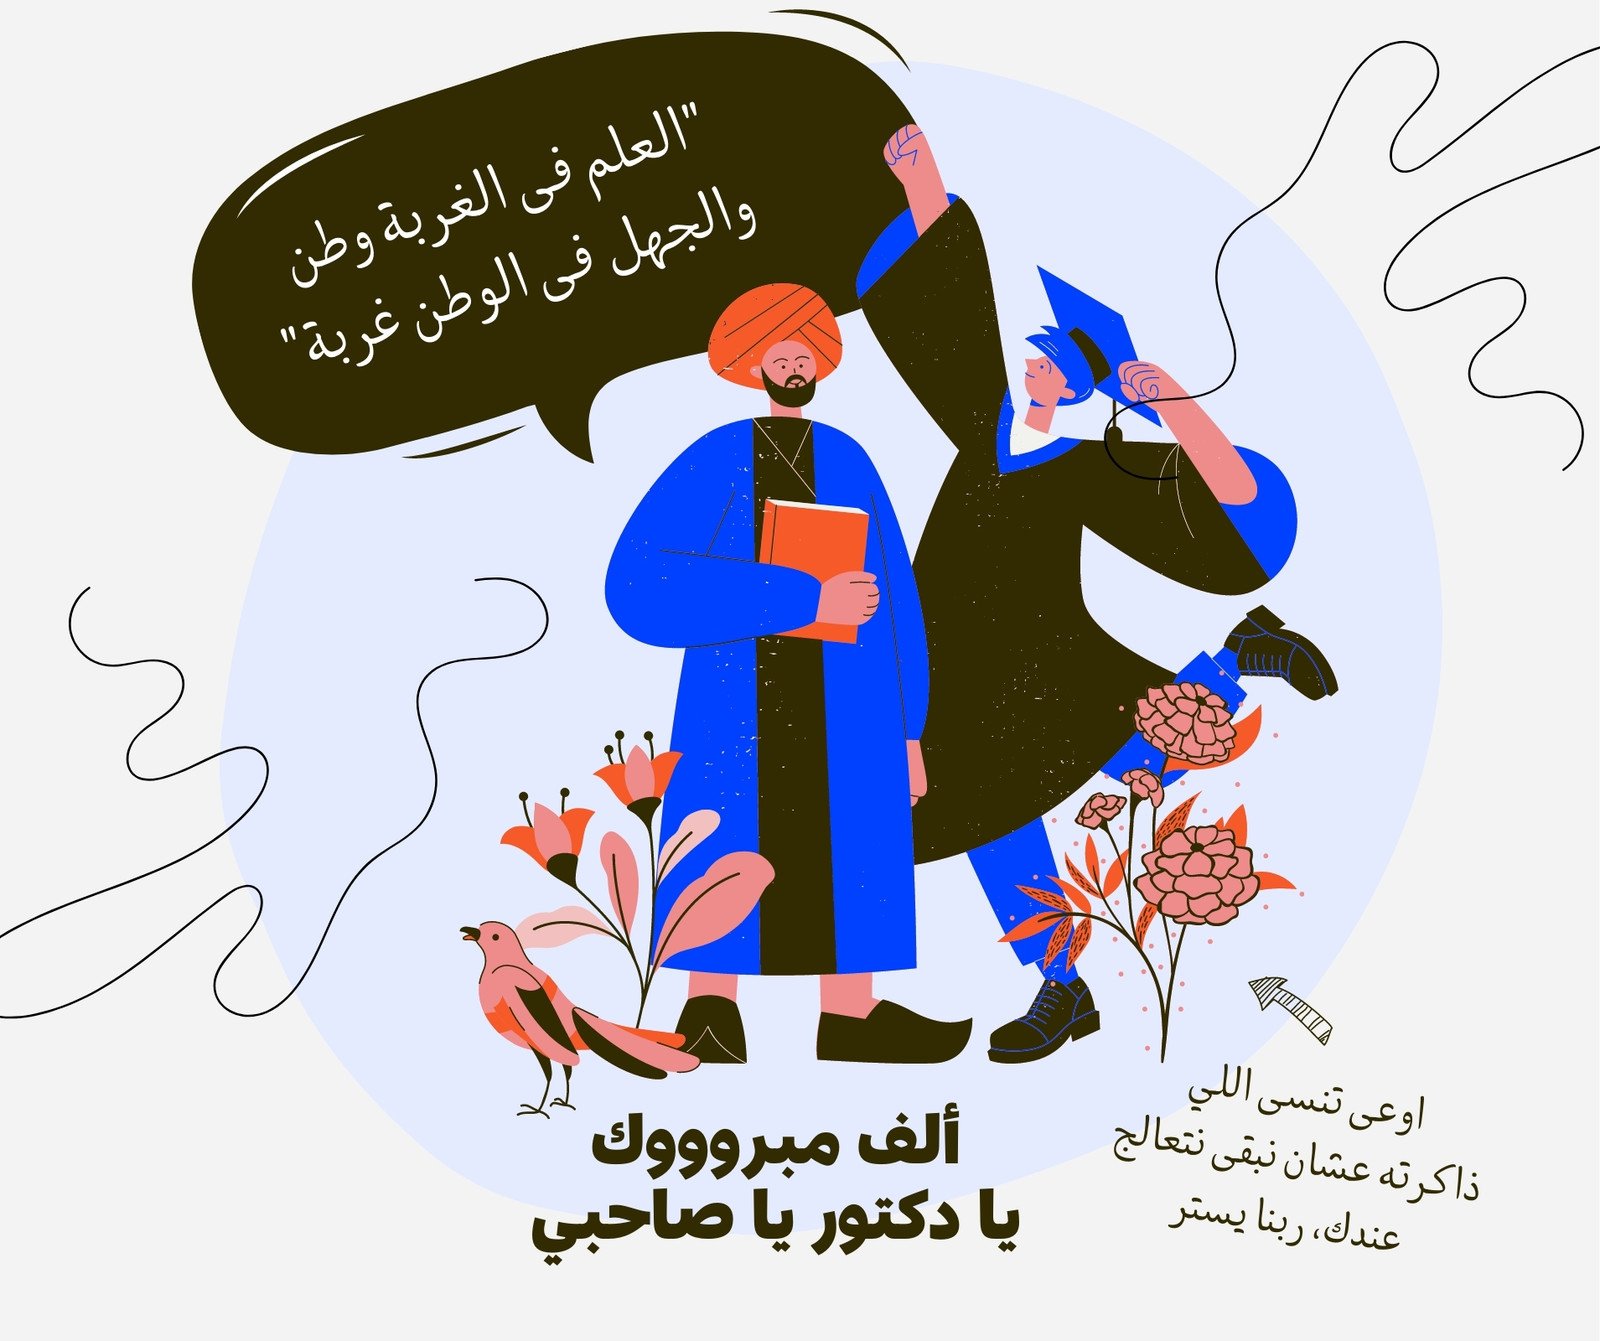 منشور فيسبوك (تصميم أفقي) مقولة عربية عن العلم وتهنئة تخرج من الجامعة